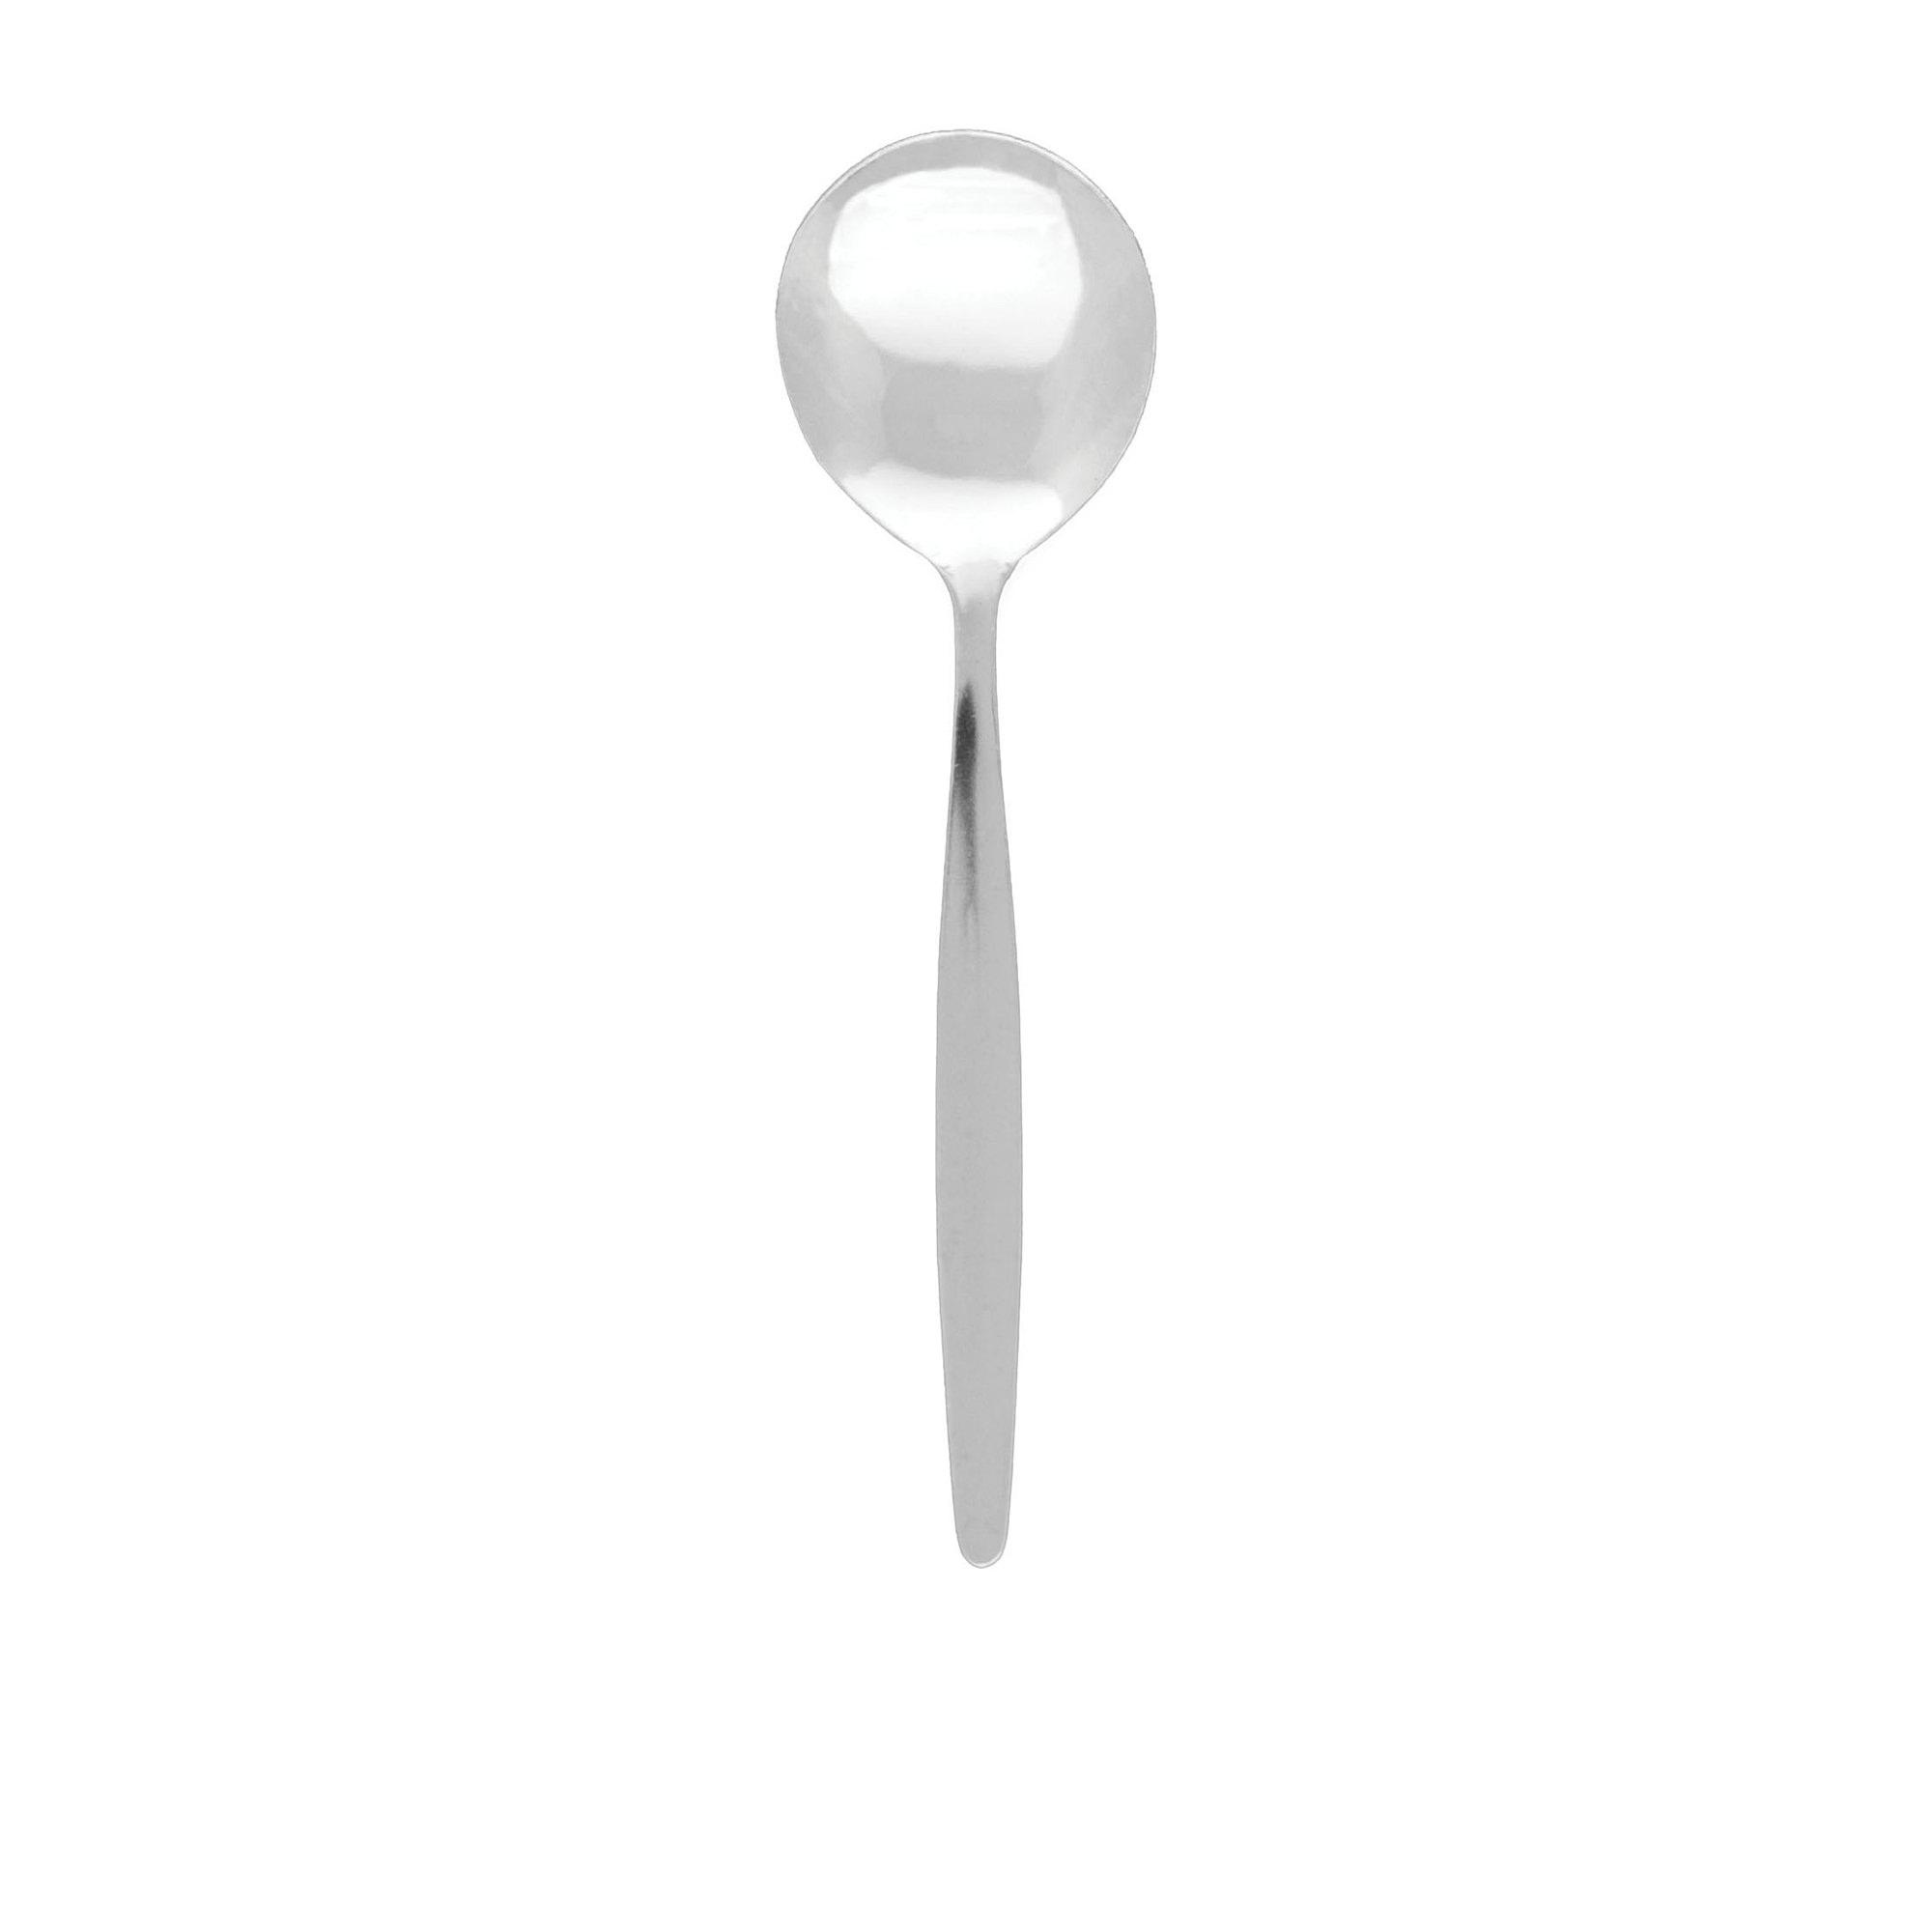 Tablekraft Austwind Soup Spoon Image 1